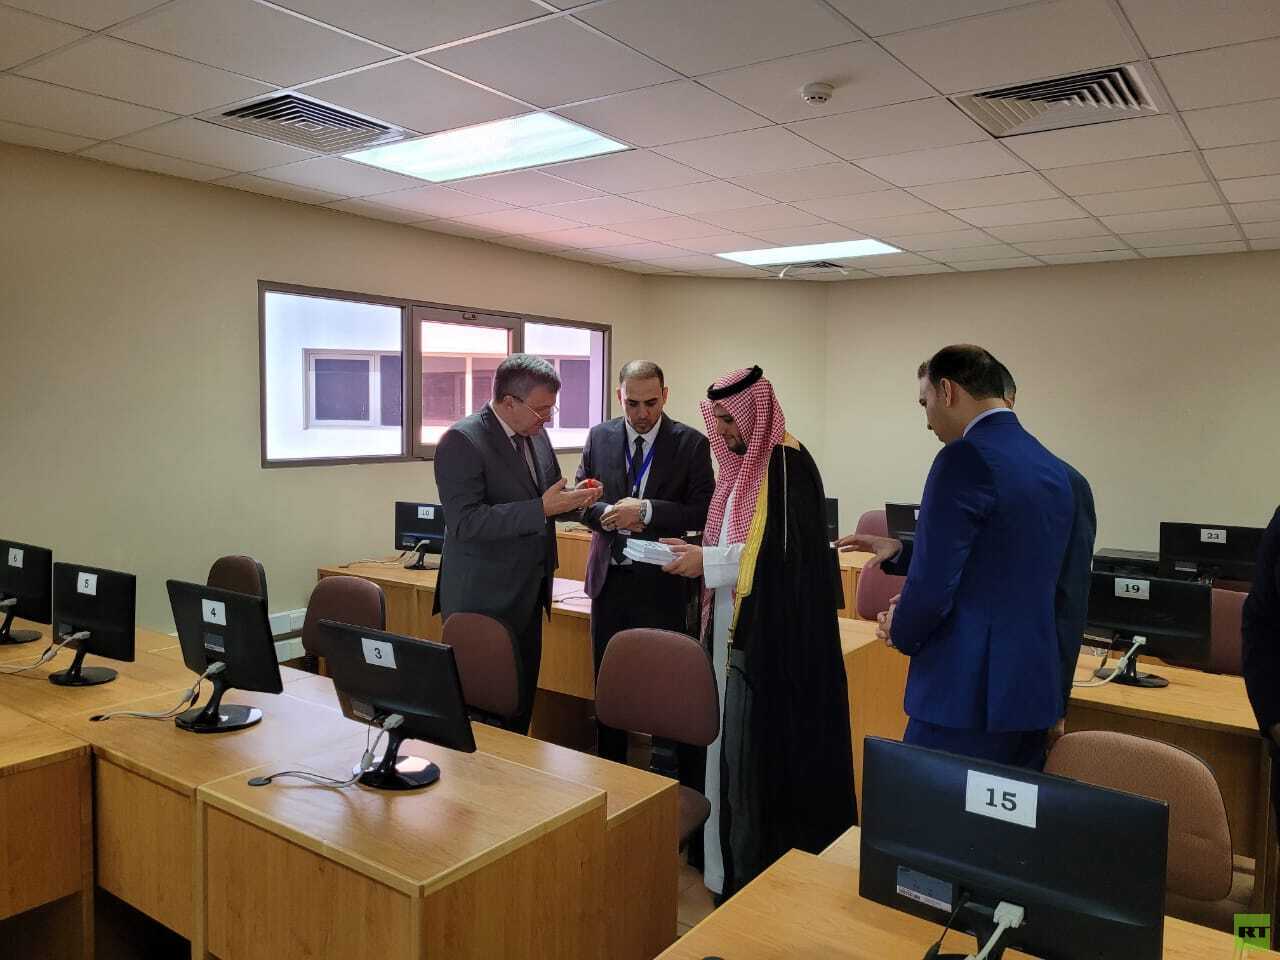 جامعة كوبان الروسية توقع اتفاقيات تعاون مع المؤسسات التعليمية السعودية